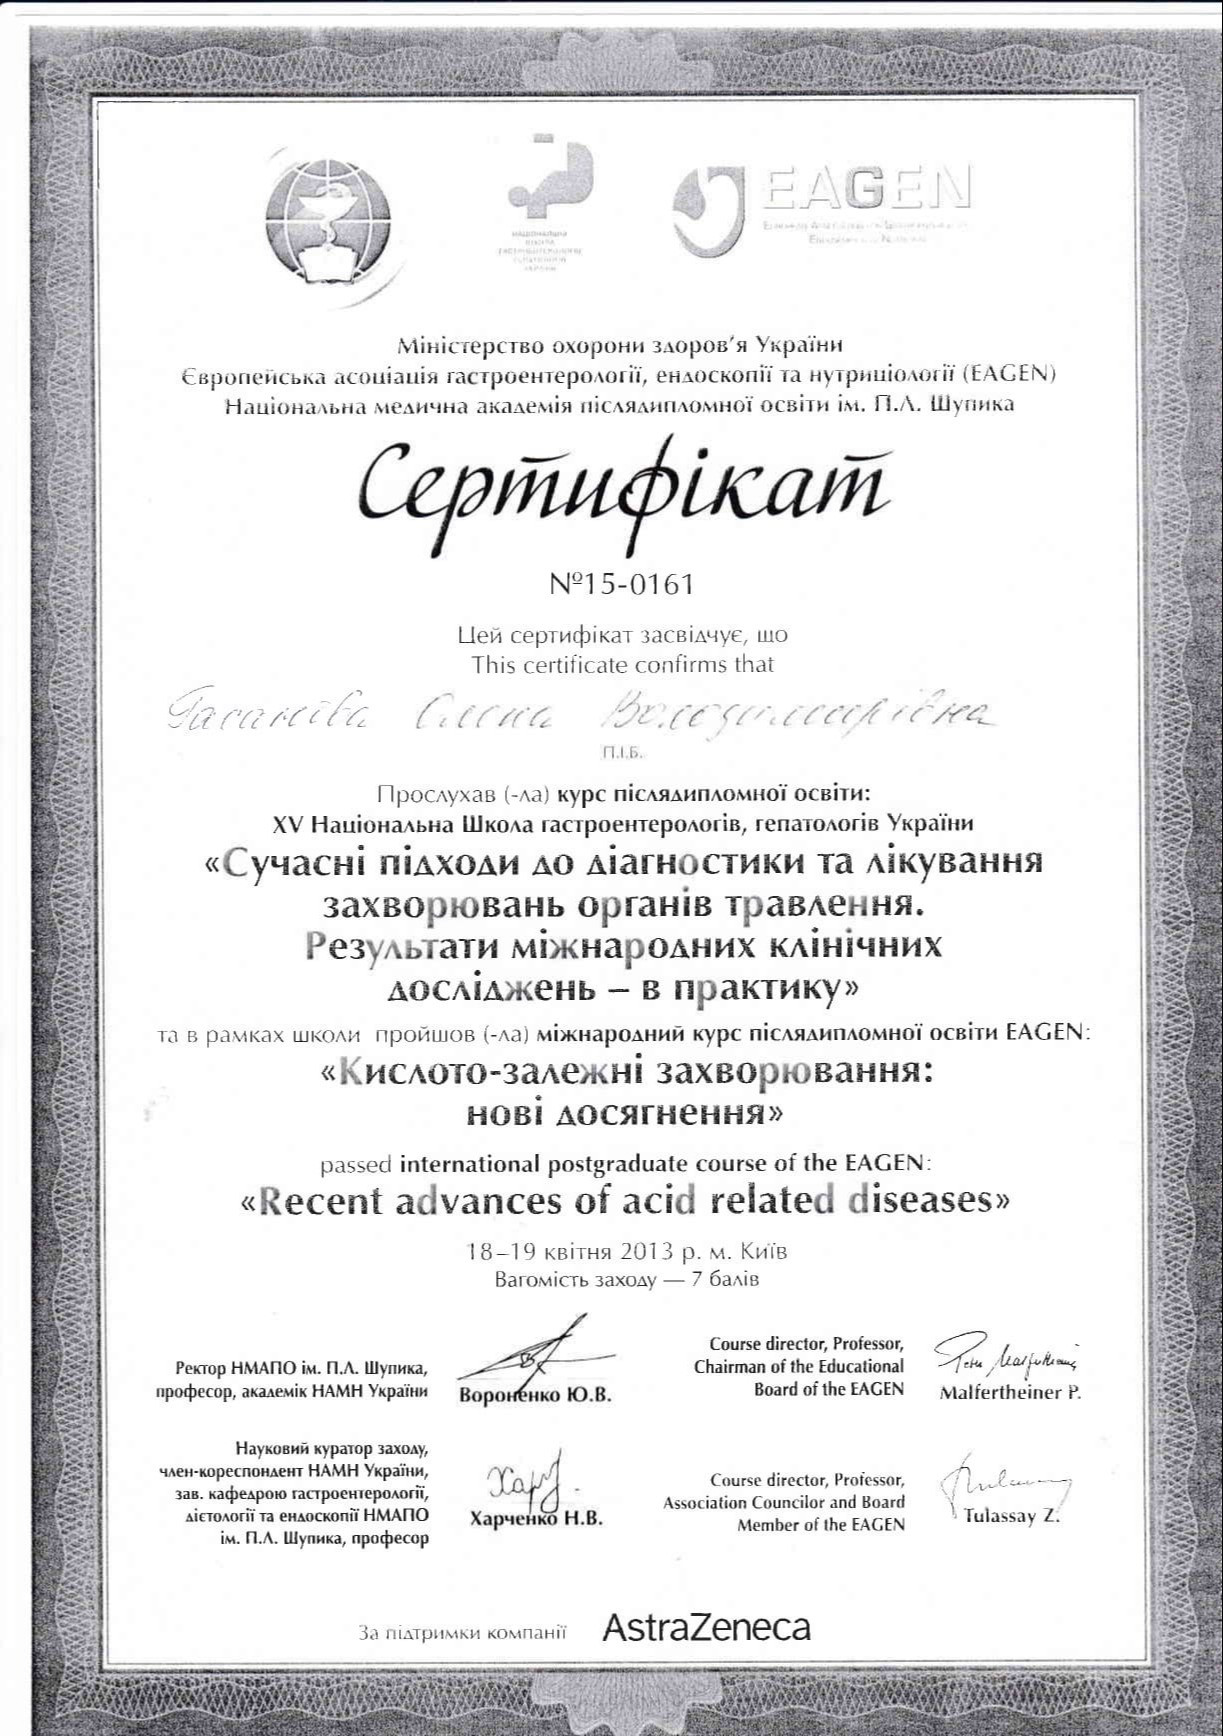 Сертификат о прохождении курса последипломного образования